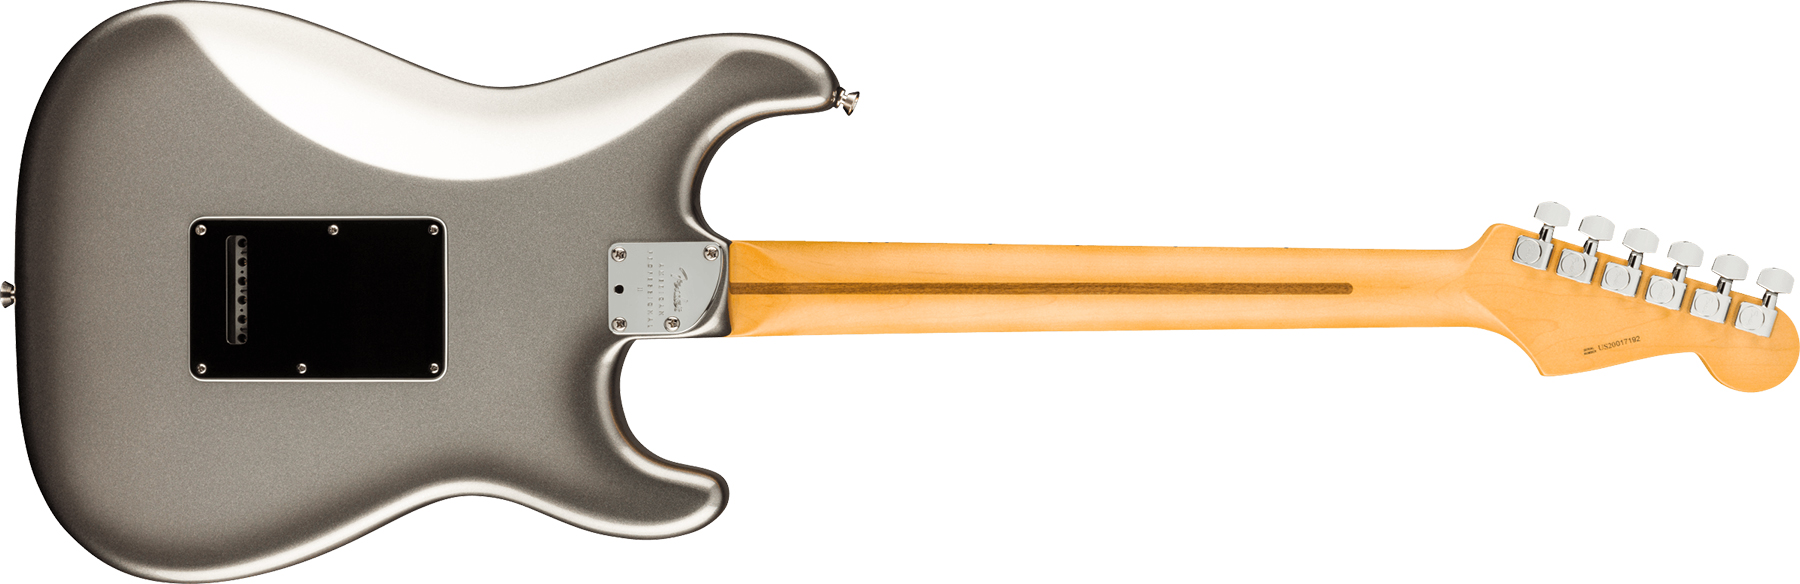 Fender Strat American Professional Ii Lh Gaucher Usa Mn - Mercury - Linkshandige elektrische gitaar - Variation 1